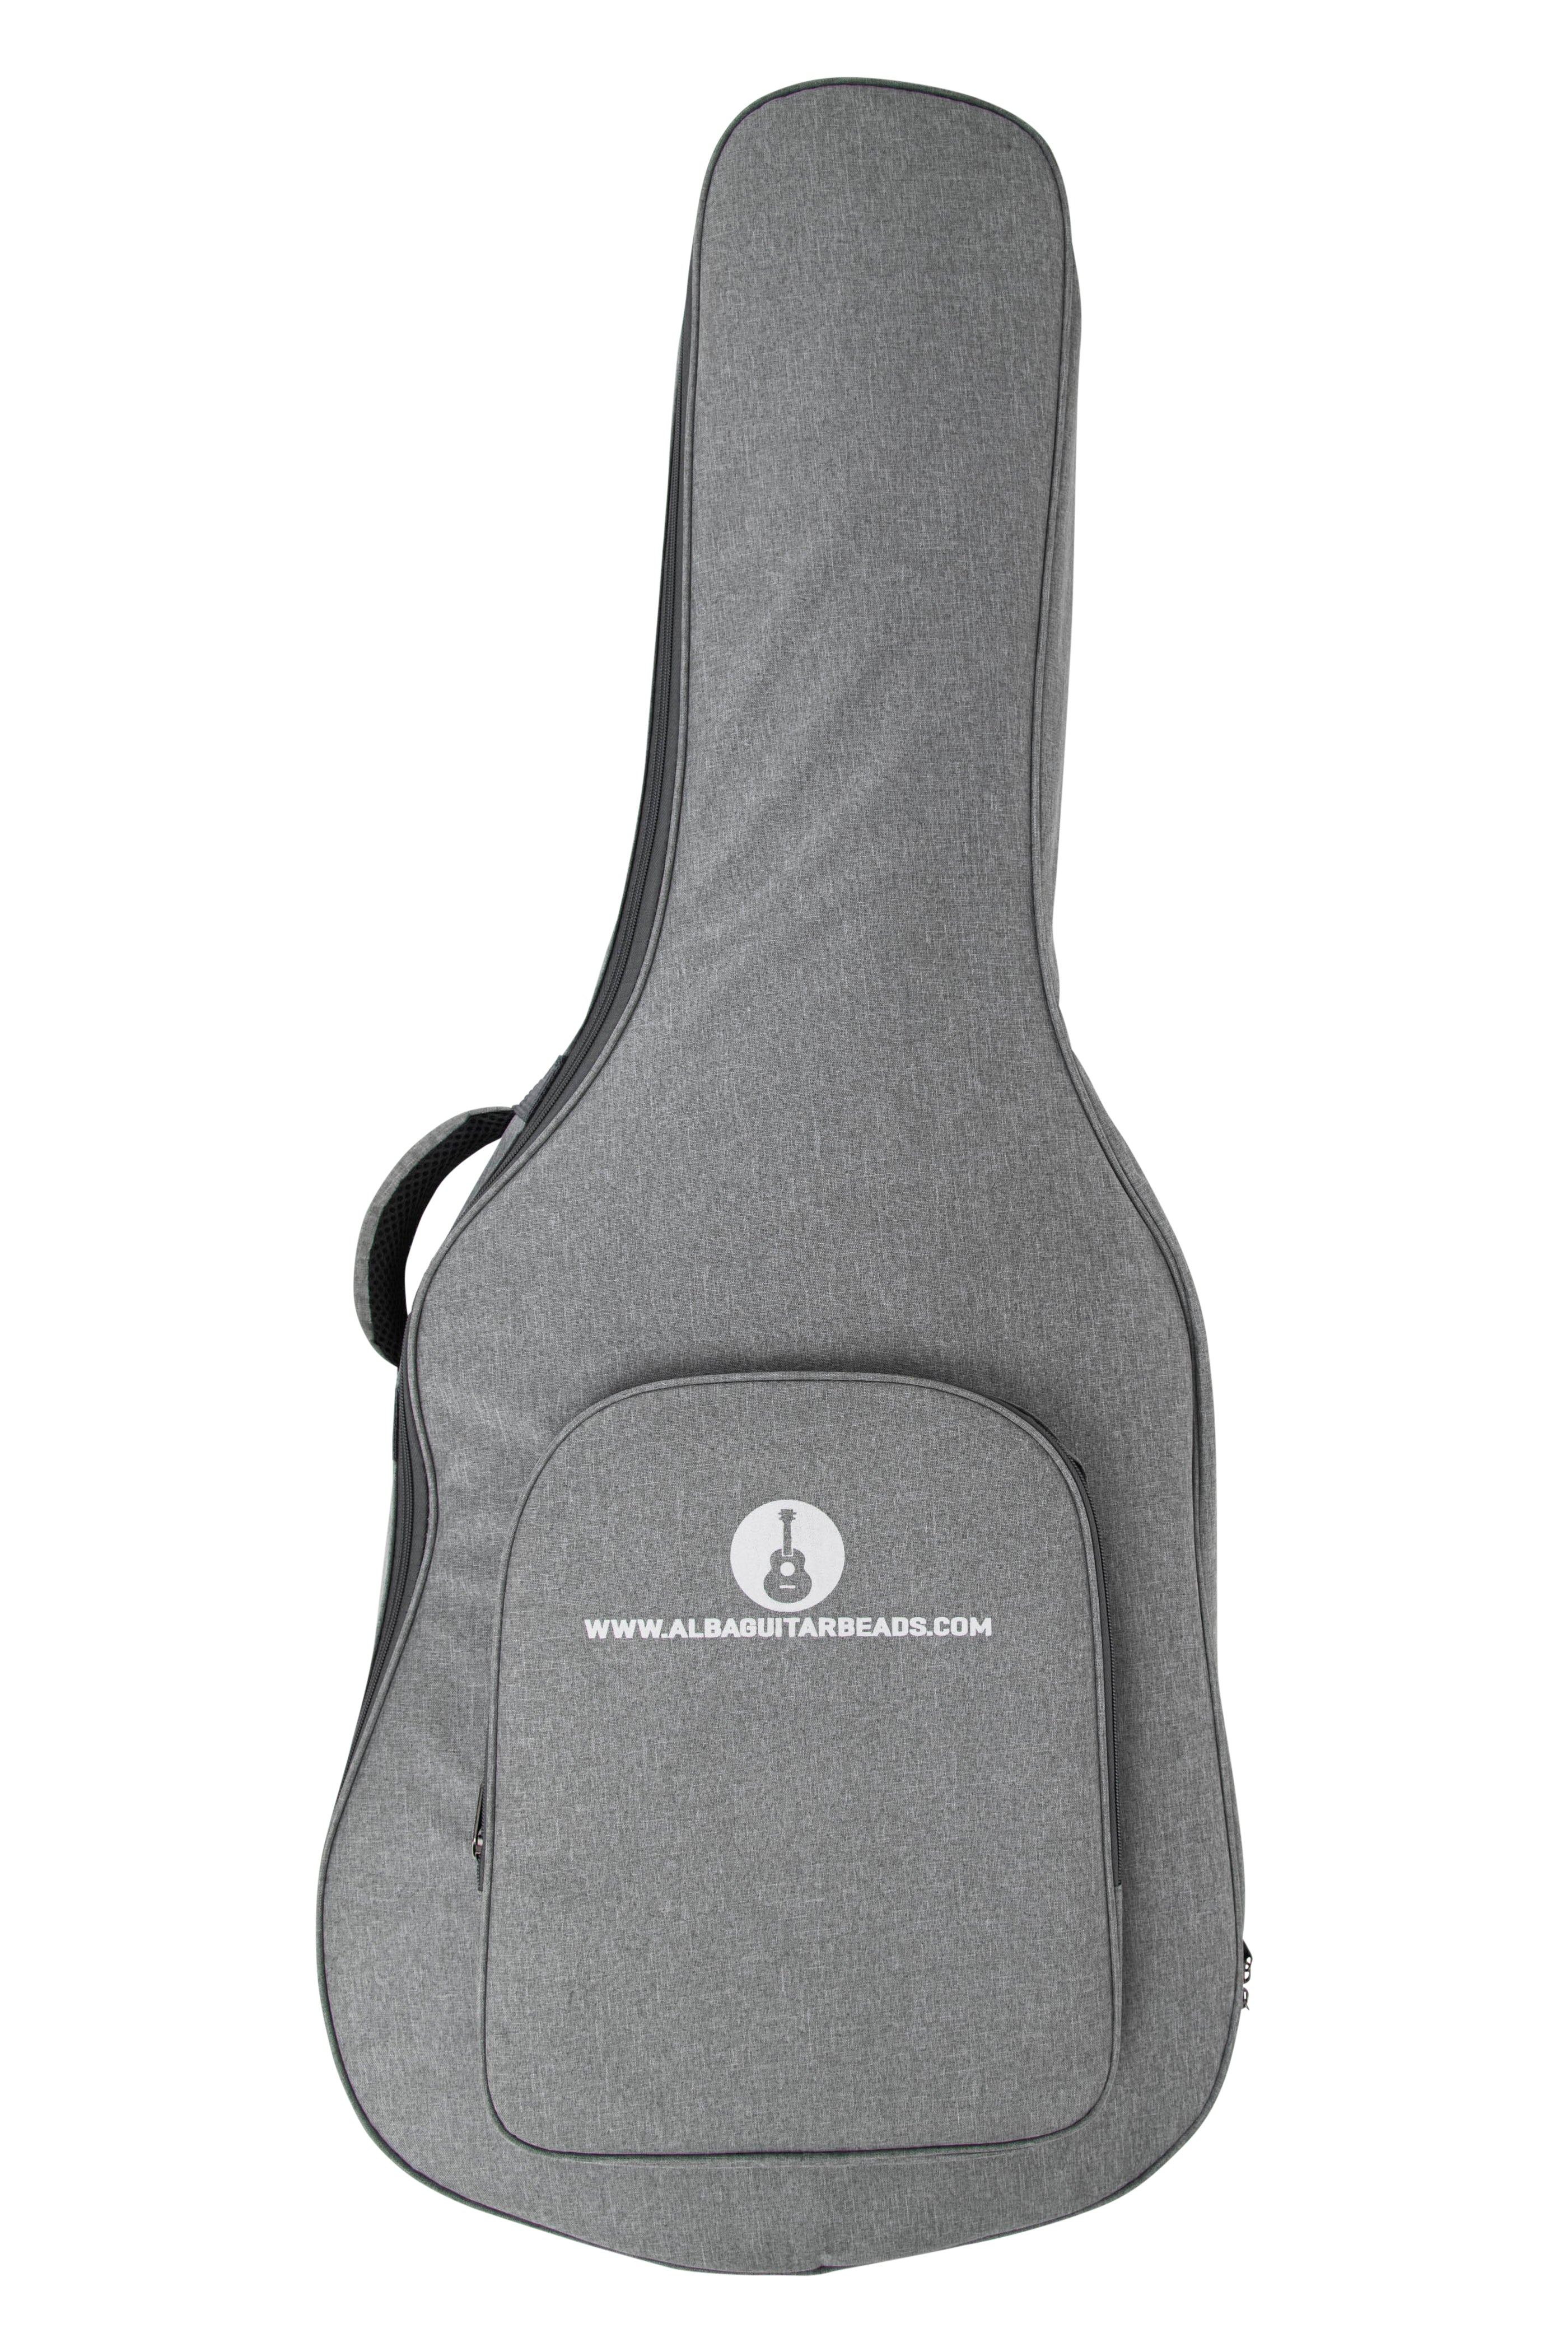 Alba Guitar Beads - capa protetora para caixas de guitarra de carbono, capa de viagem para guitarra clássica e caixas de carbono para guitarra flamenca